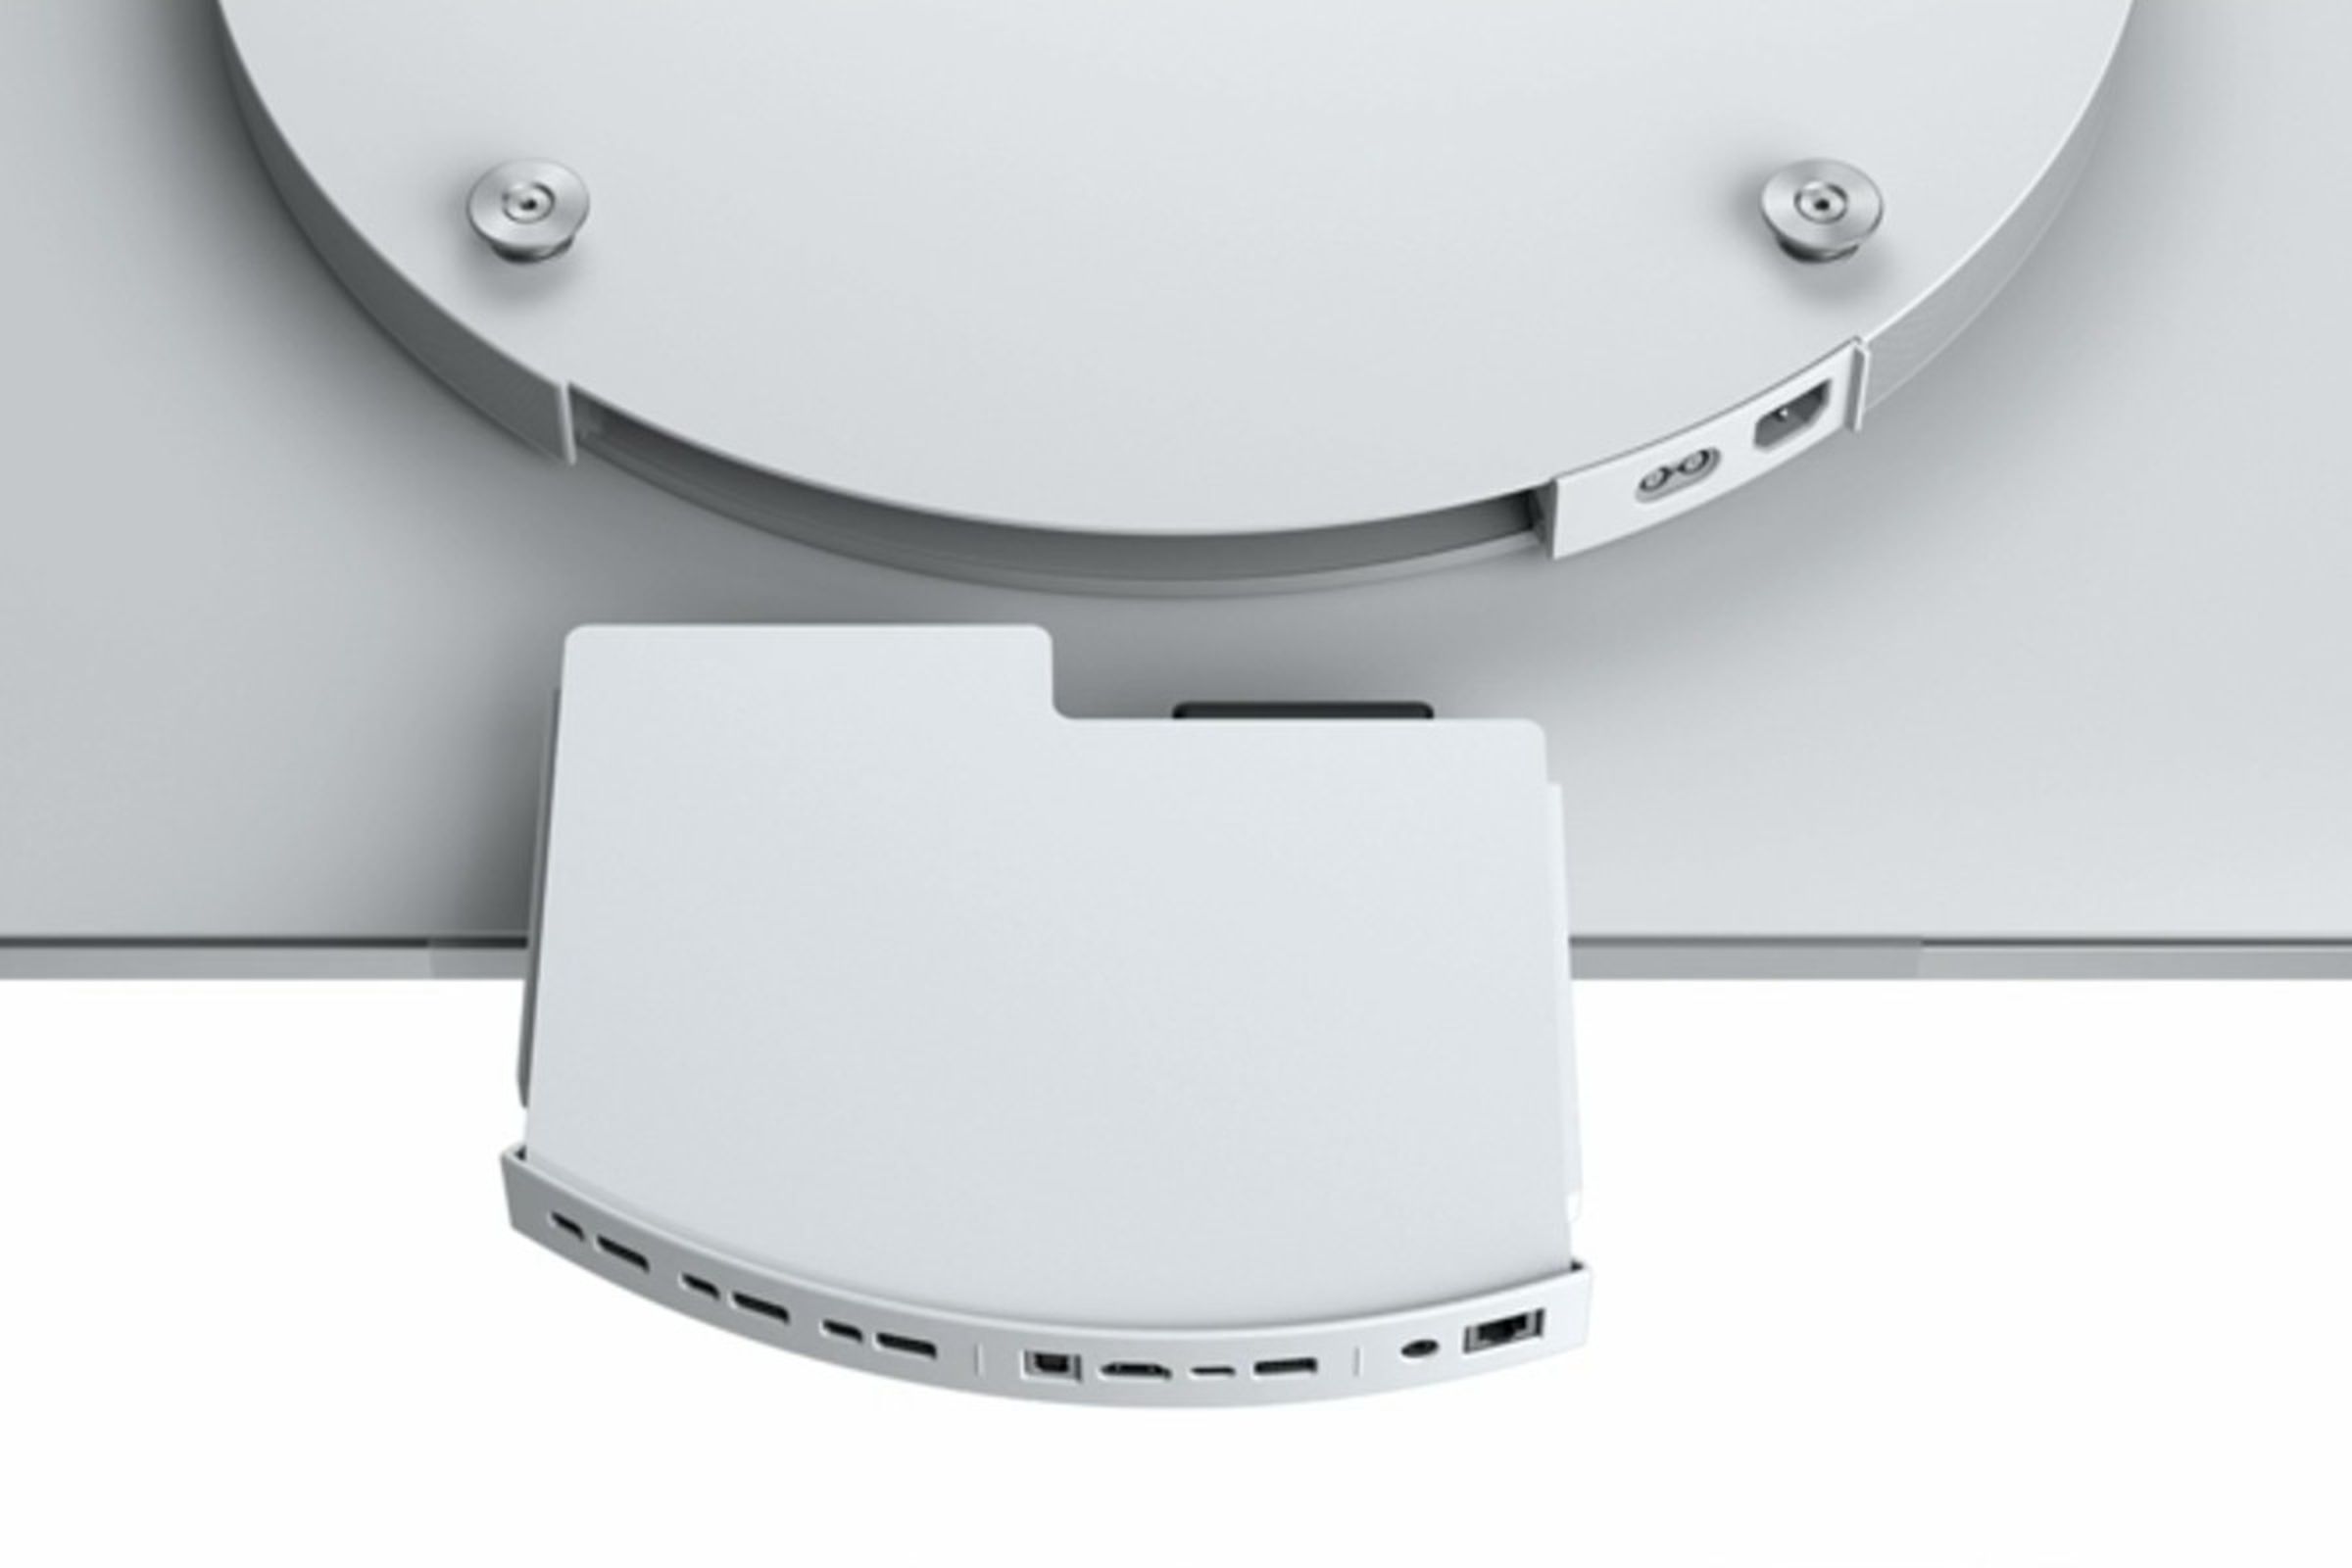 Surface Hub 2’s modular design